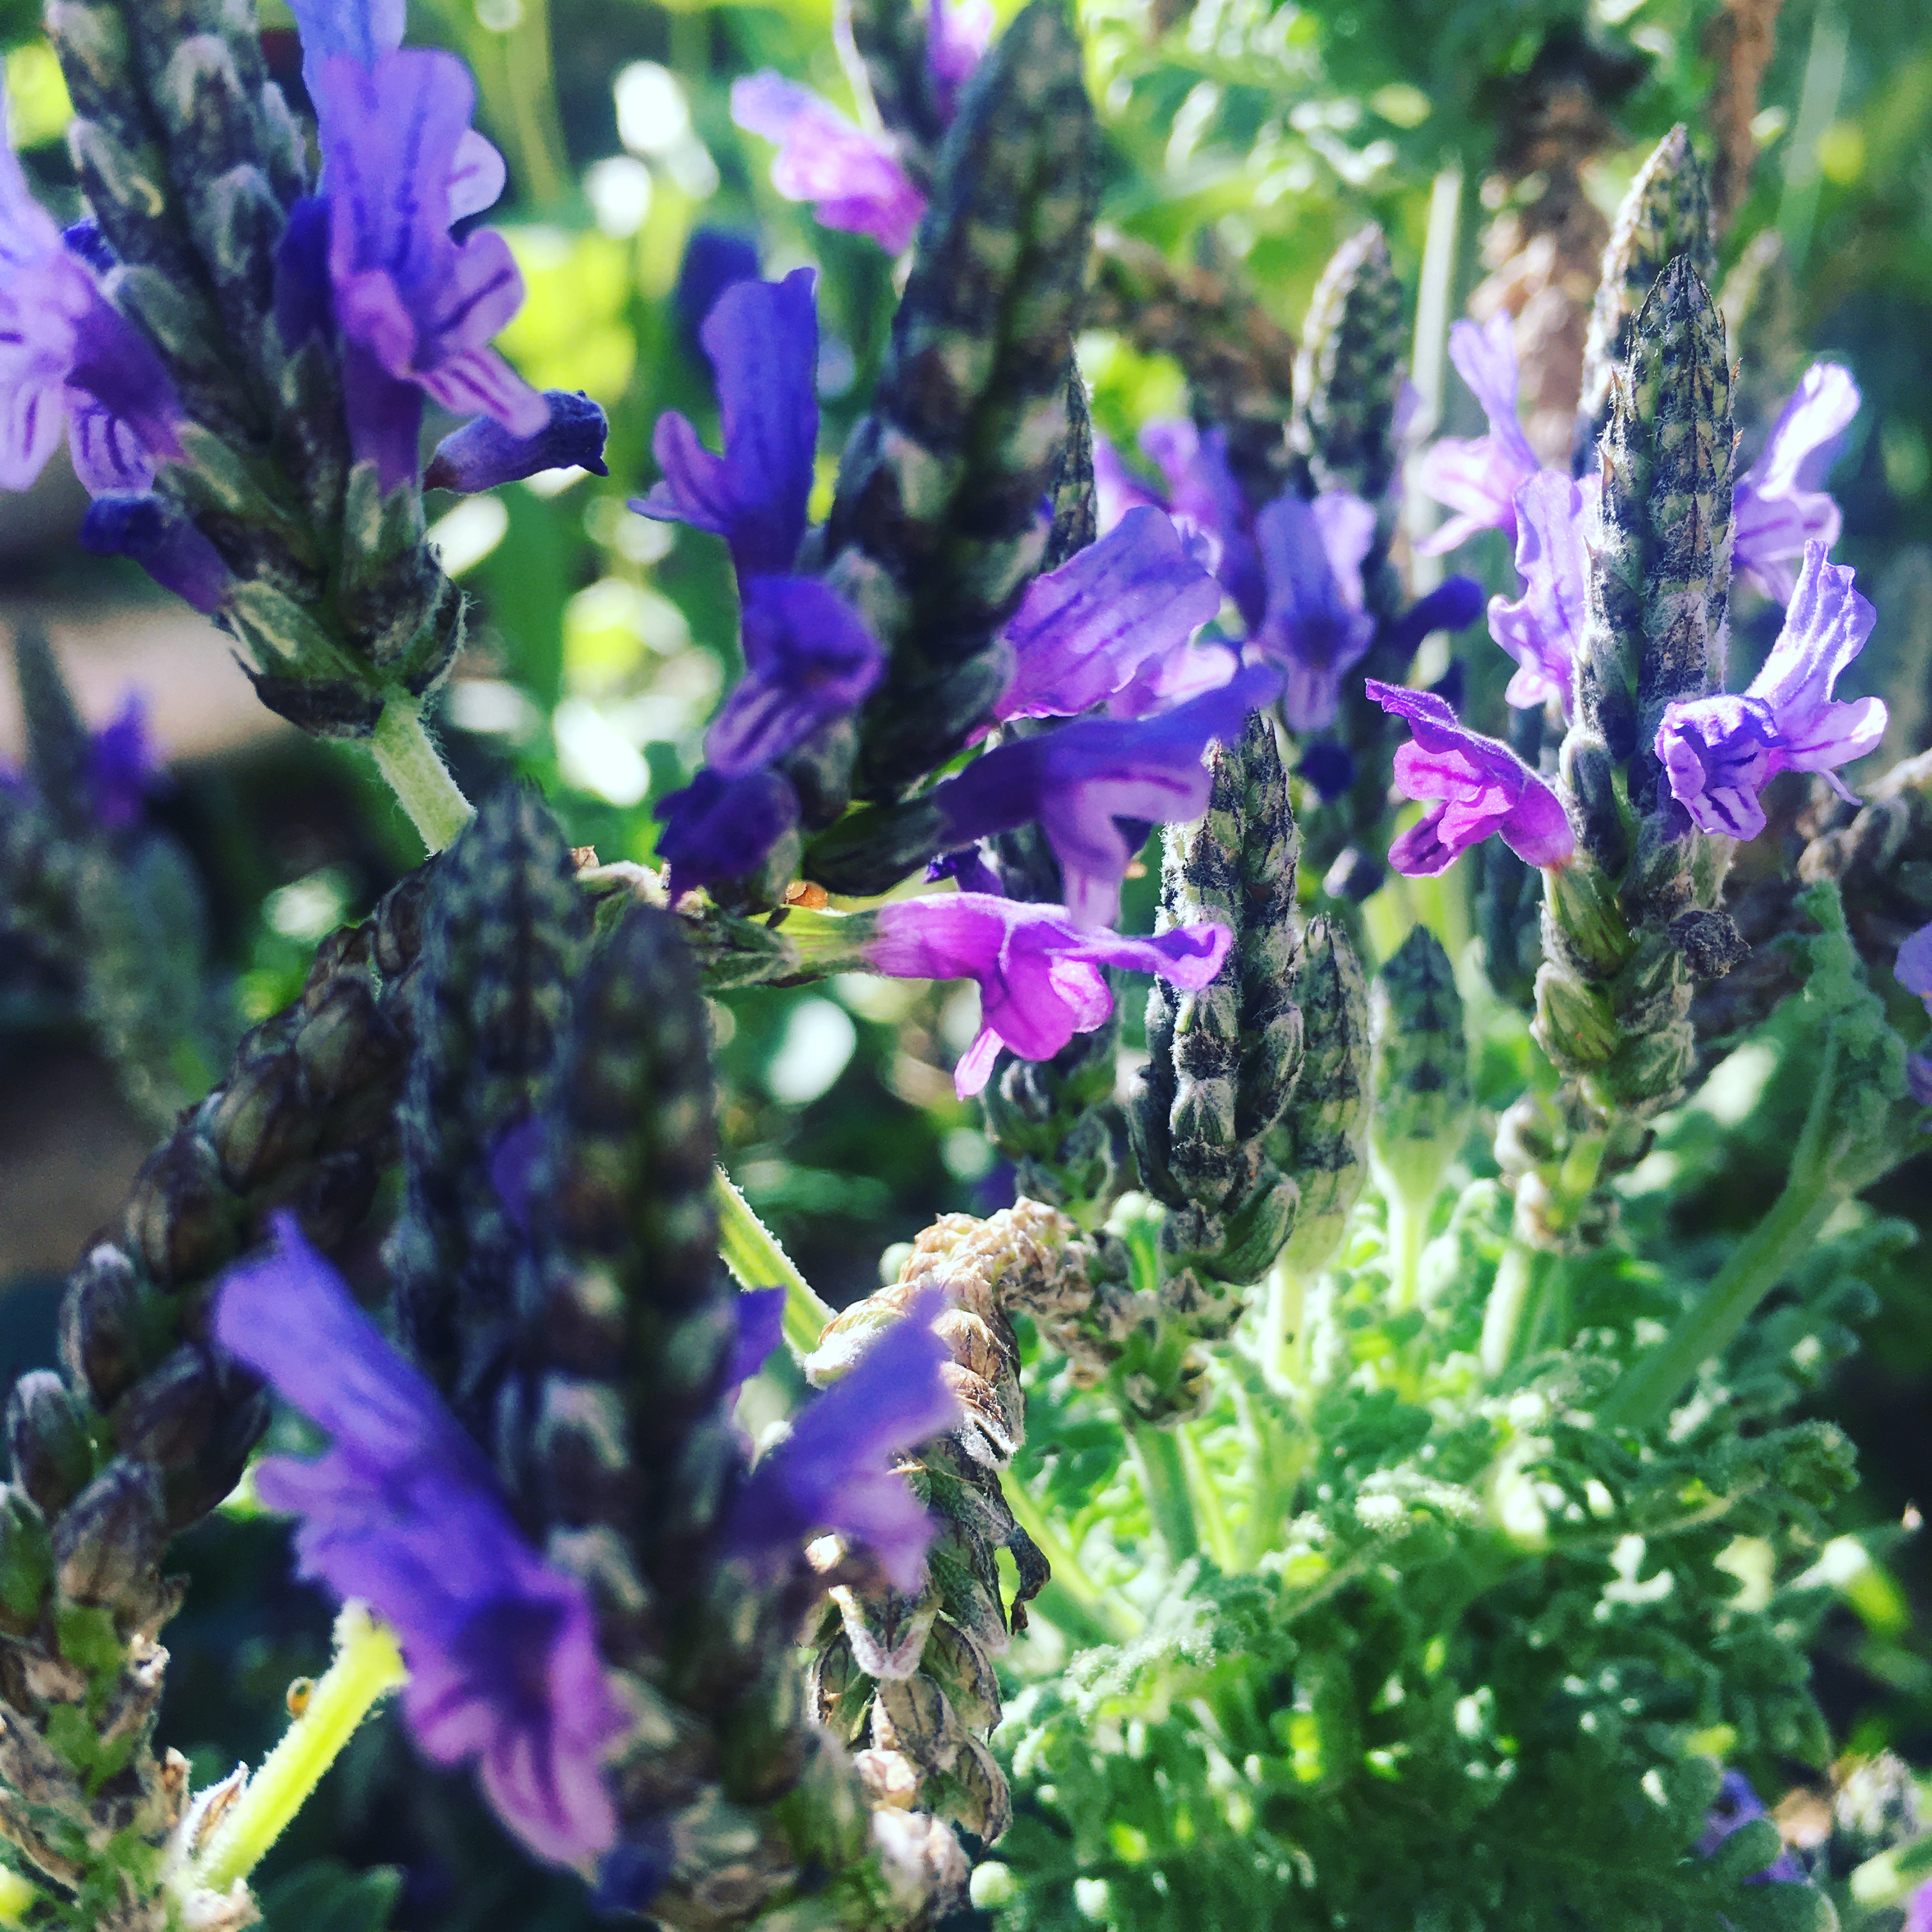 Fernleaf Lavender Plants: Tips For Growing Fernleaf Lavender In Gardens